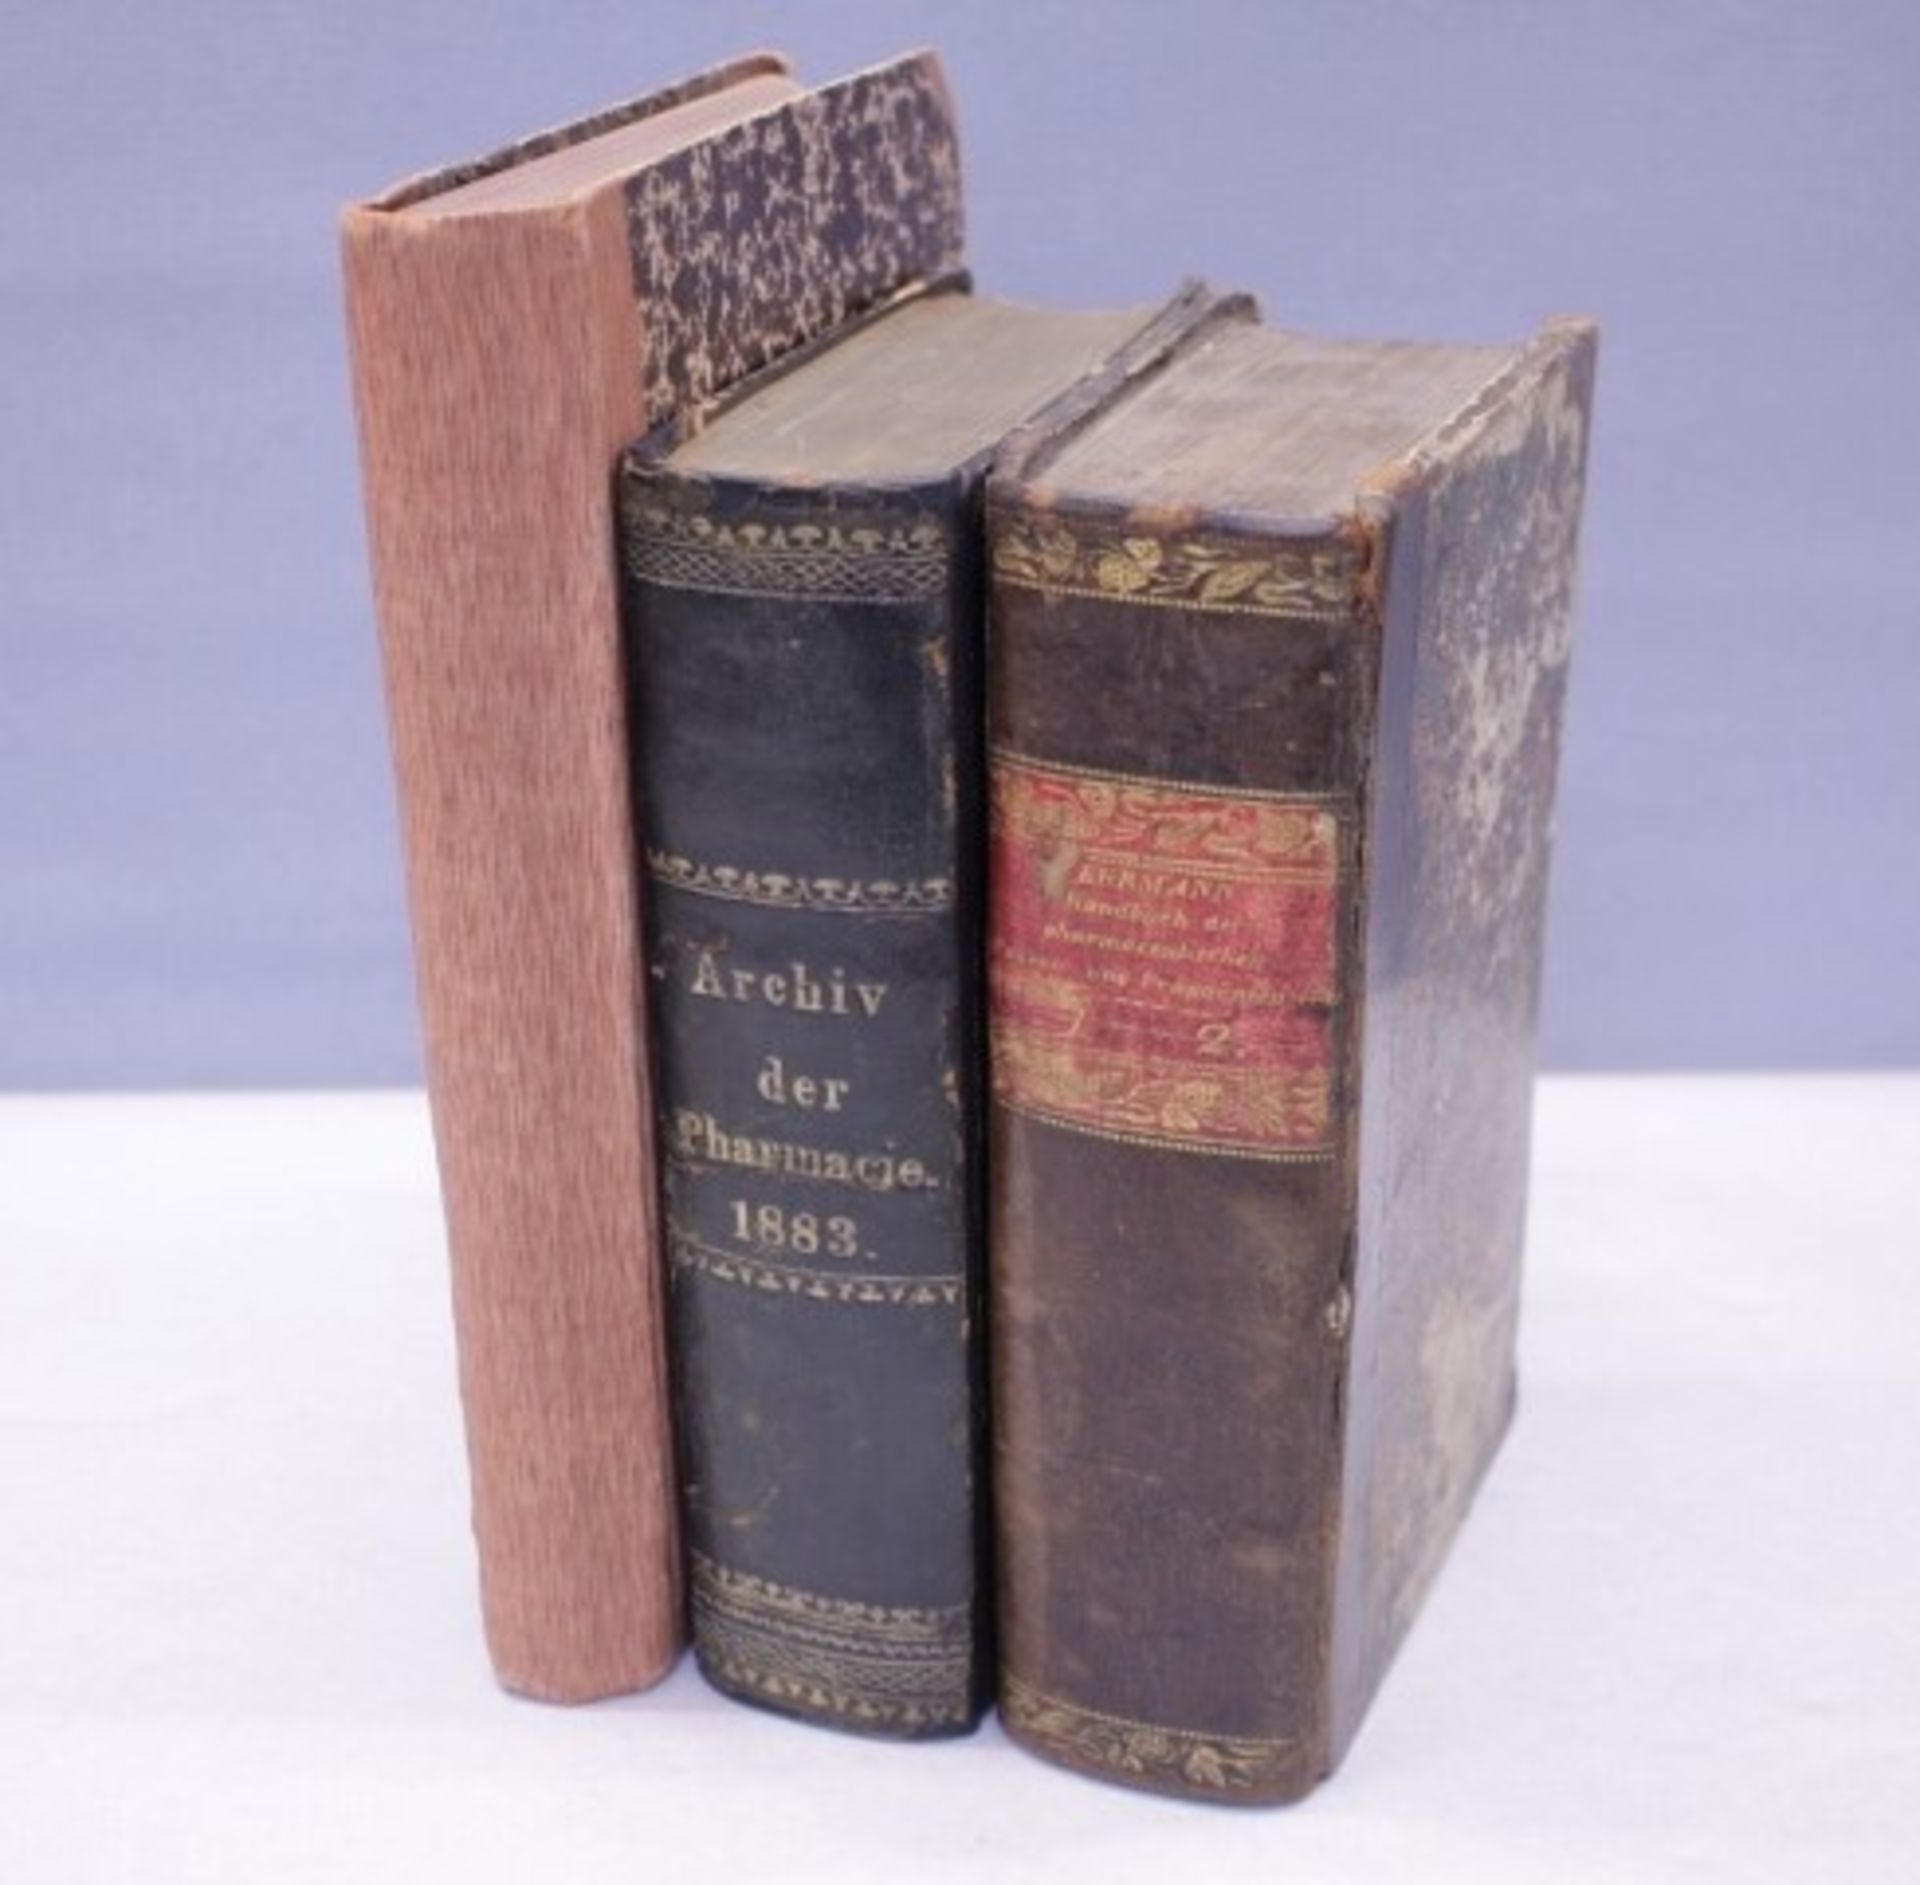 3 Pharmazeutische Fachbücher1.Archiv der Pharmacie 1883E.Reichardt Halle a/S.2.Handbuch der